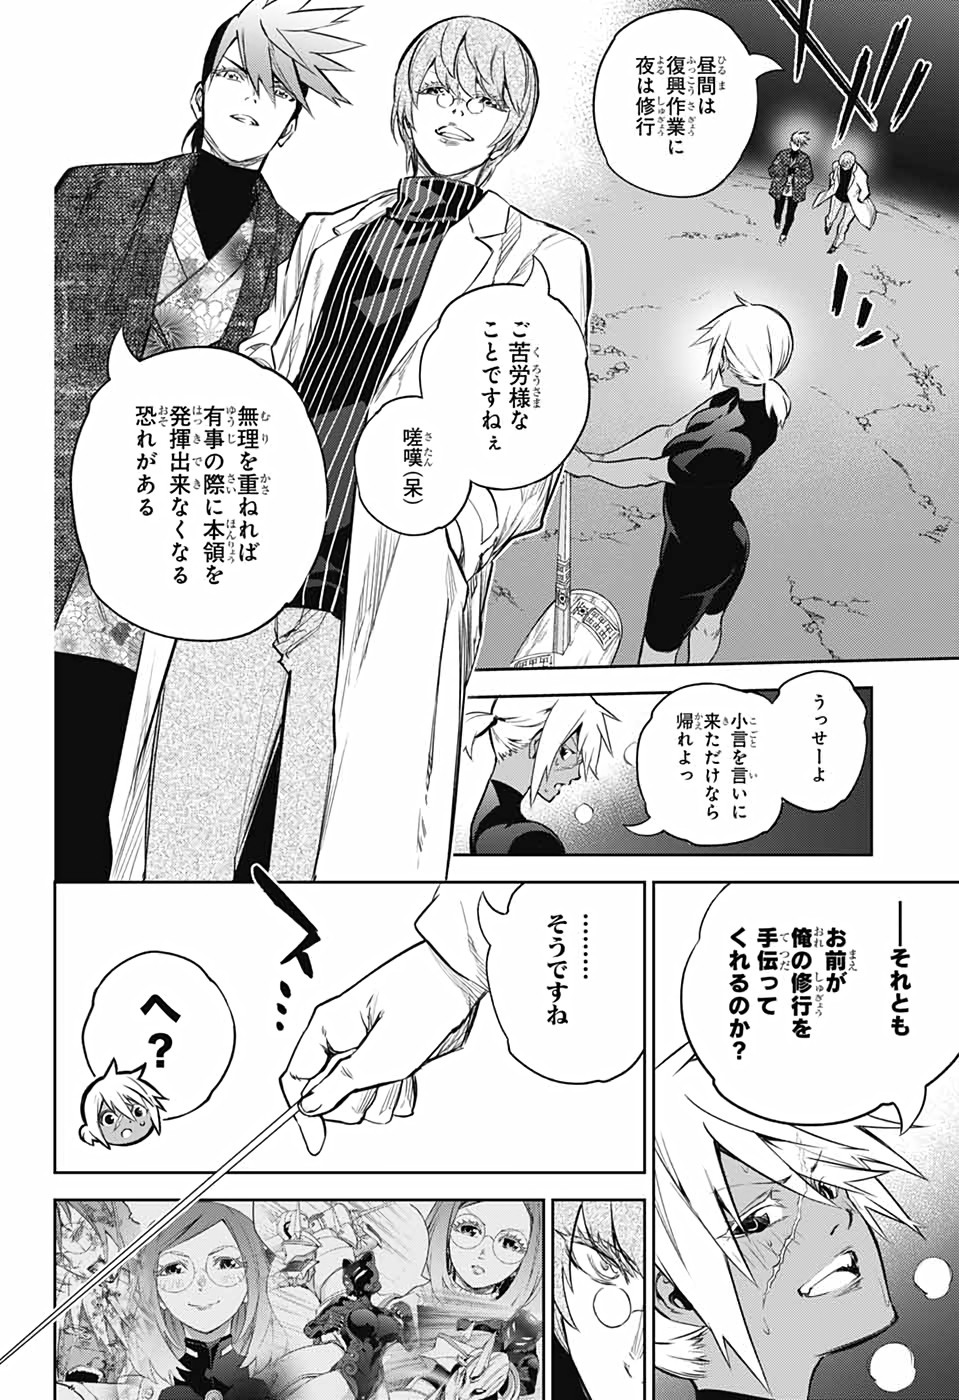 Sousei no Onmyouji - Chapter 102 - Page 2